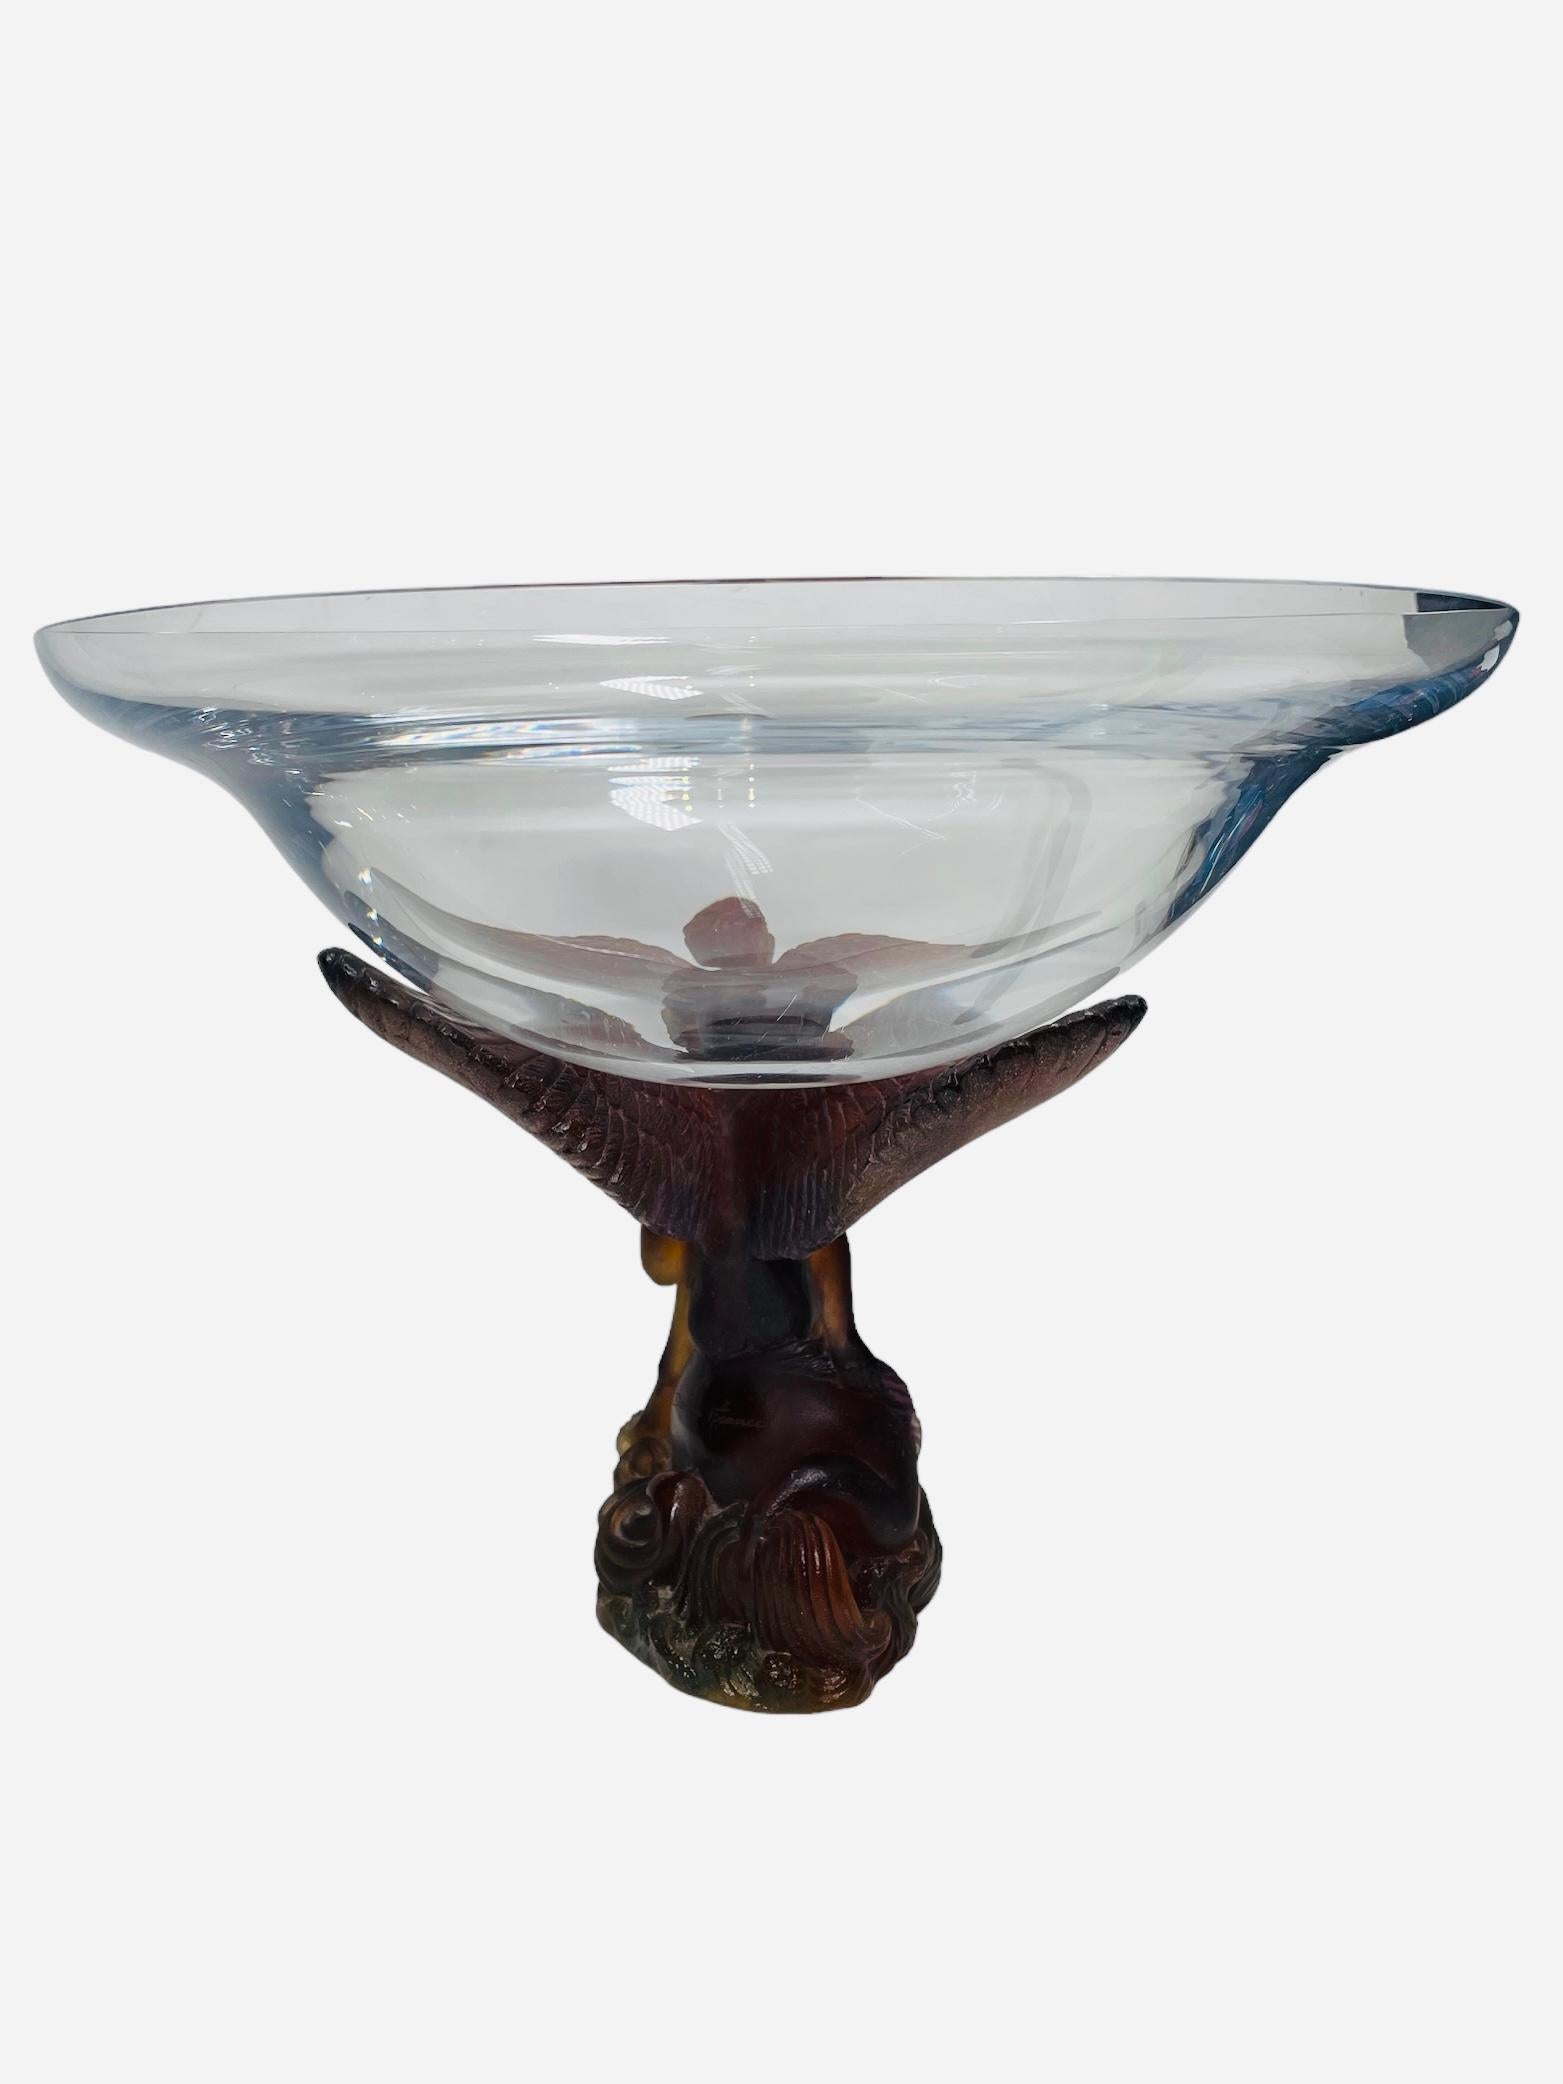 Daum Pate de Verre Crystal Angel Sculpture Compote/Bowl For Sale 4